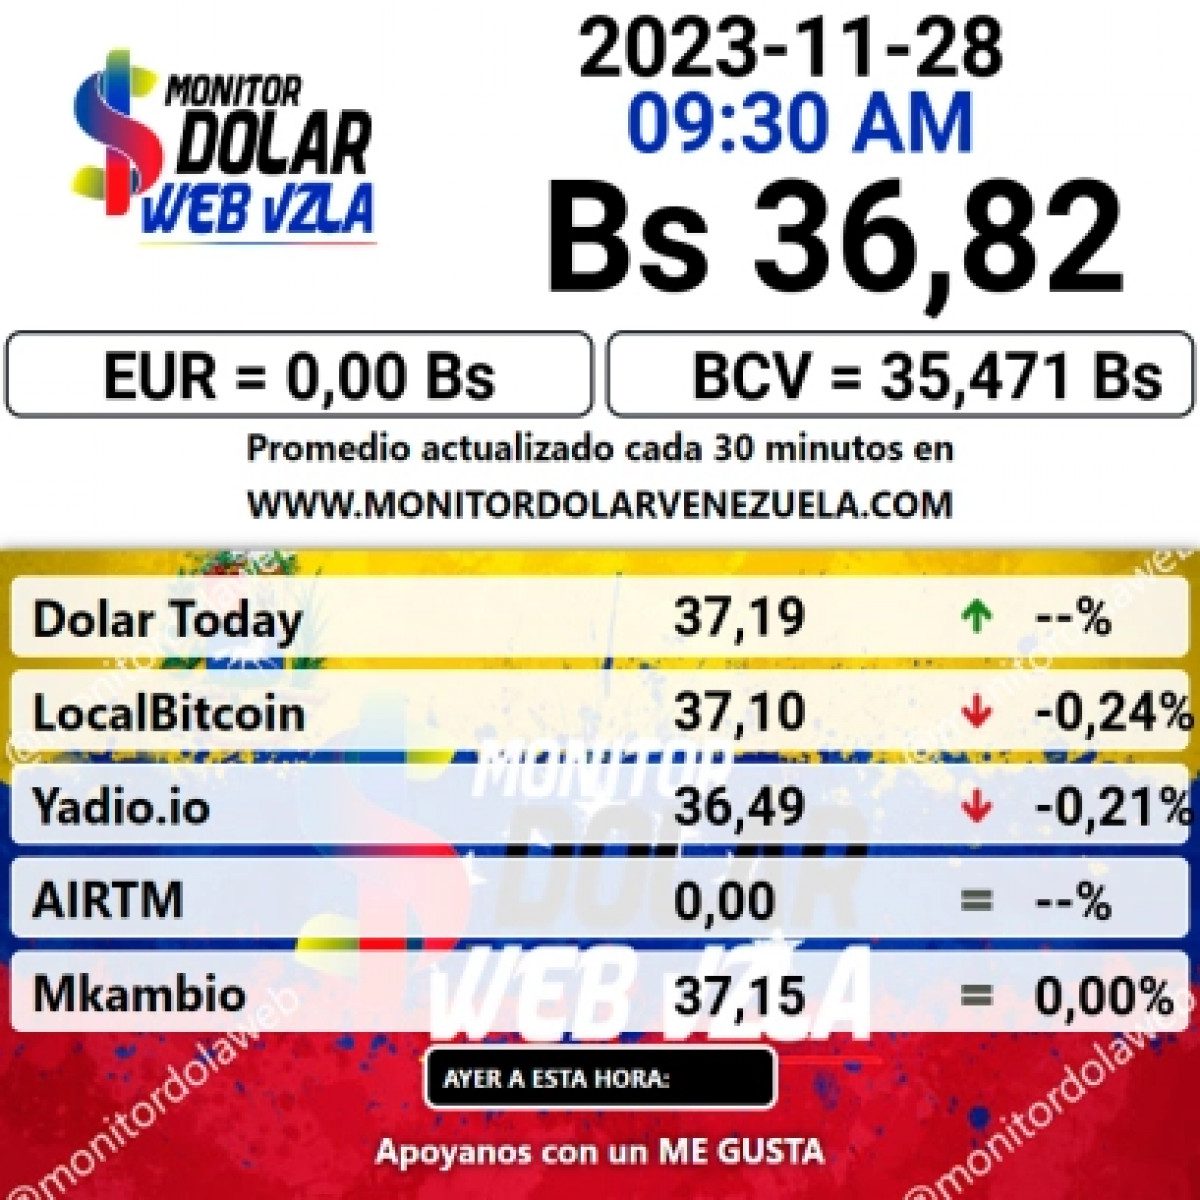 dolartoday en venezuela precio del dolar este 28 de noviembre de 2023 laverdaddemonagas.com monitor dolar21